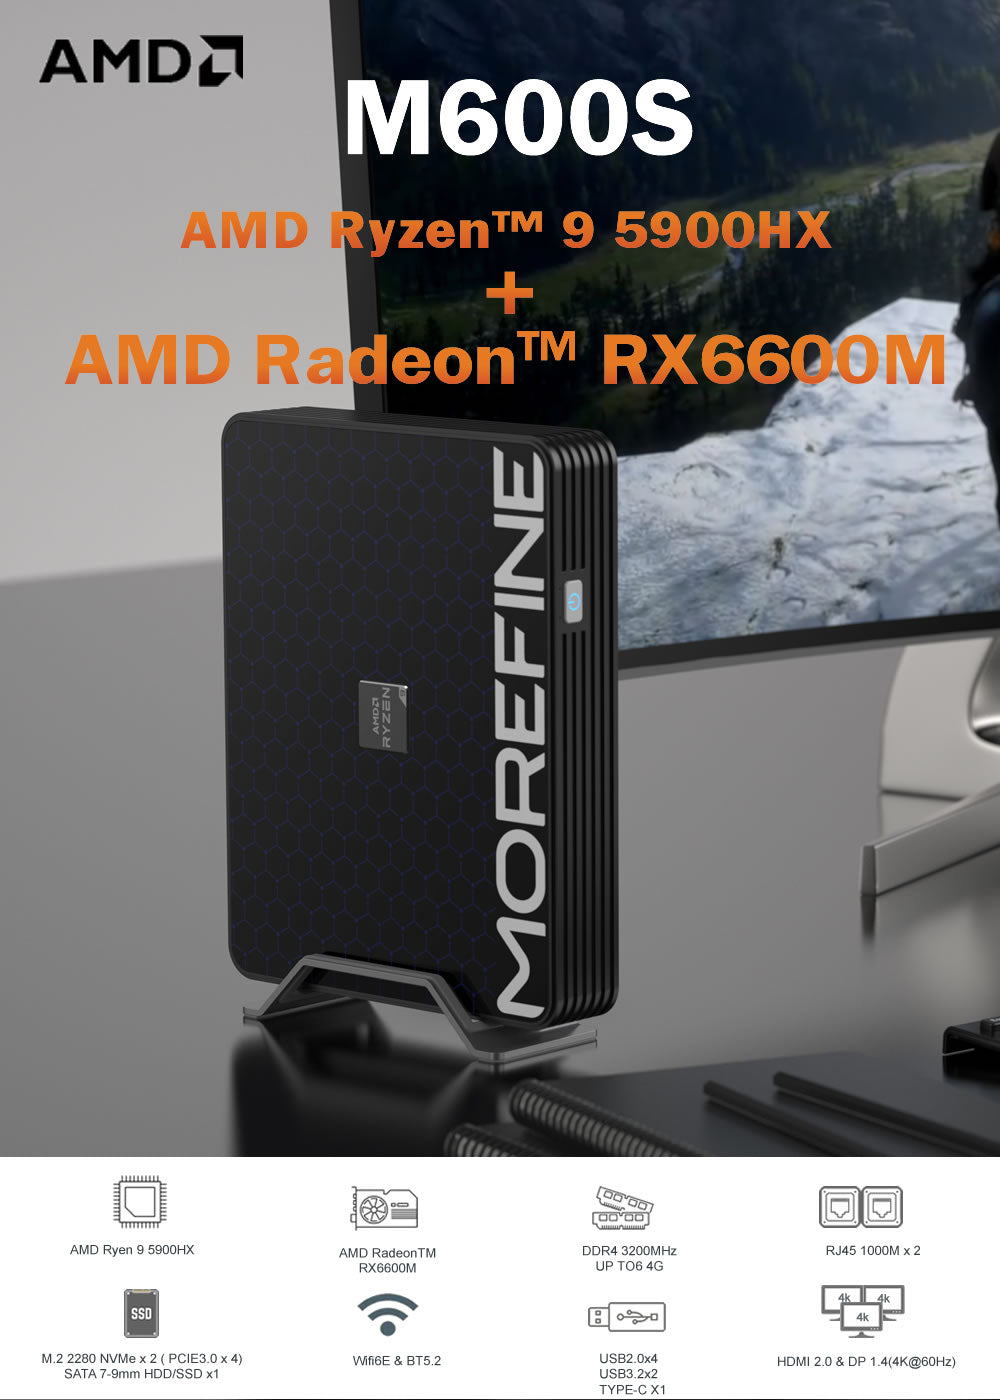 Morefine M600 Mini PC AMD R9-6900HX The May discount